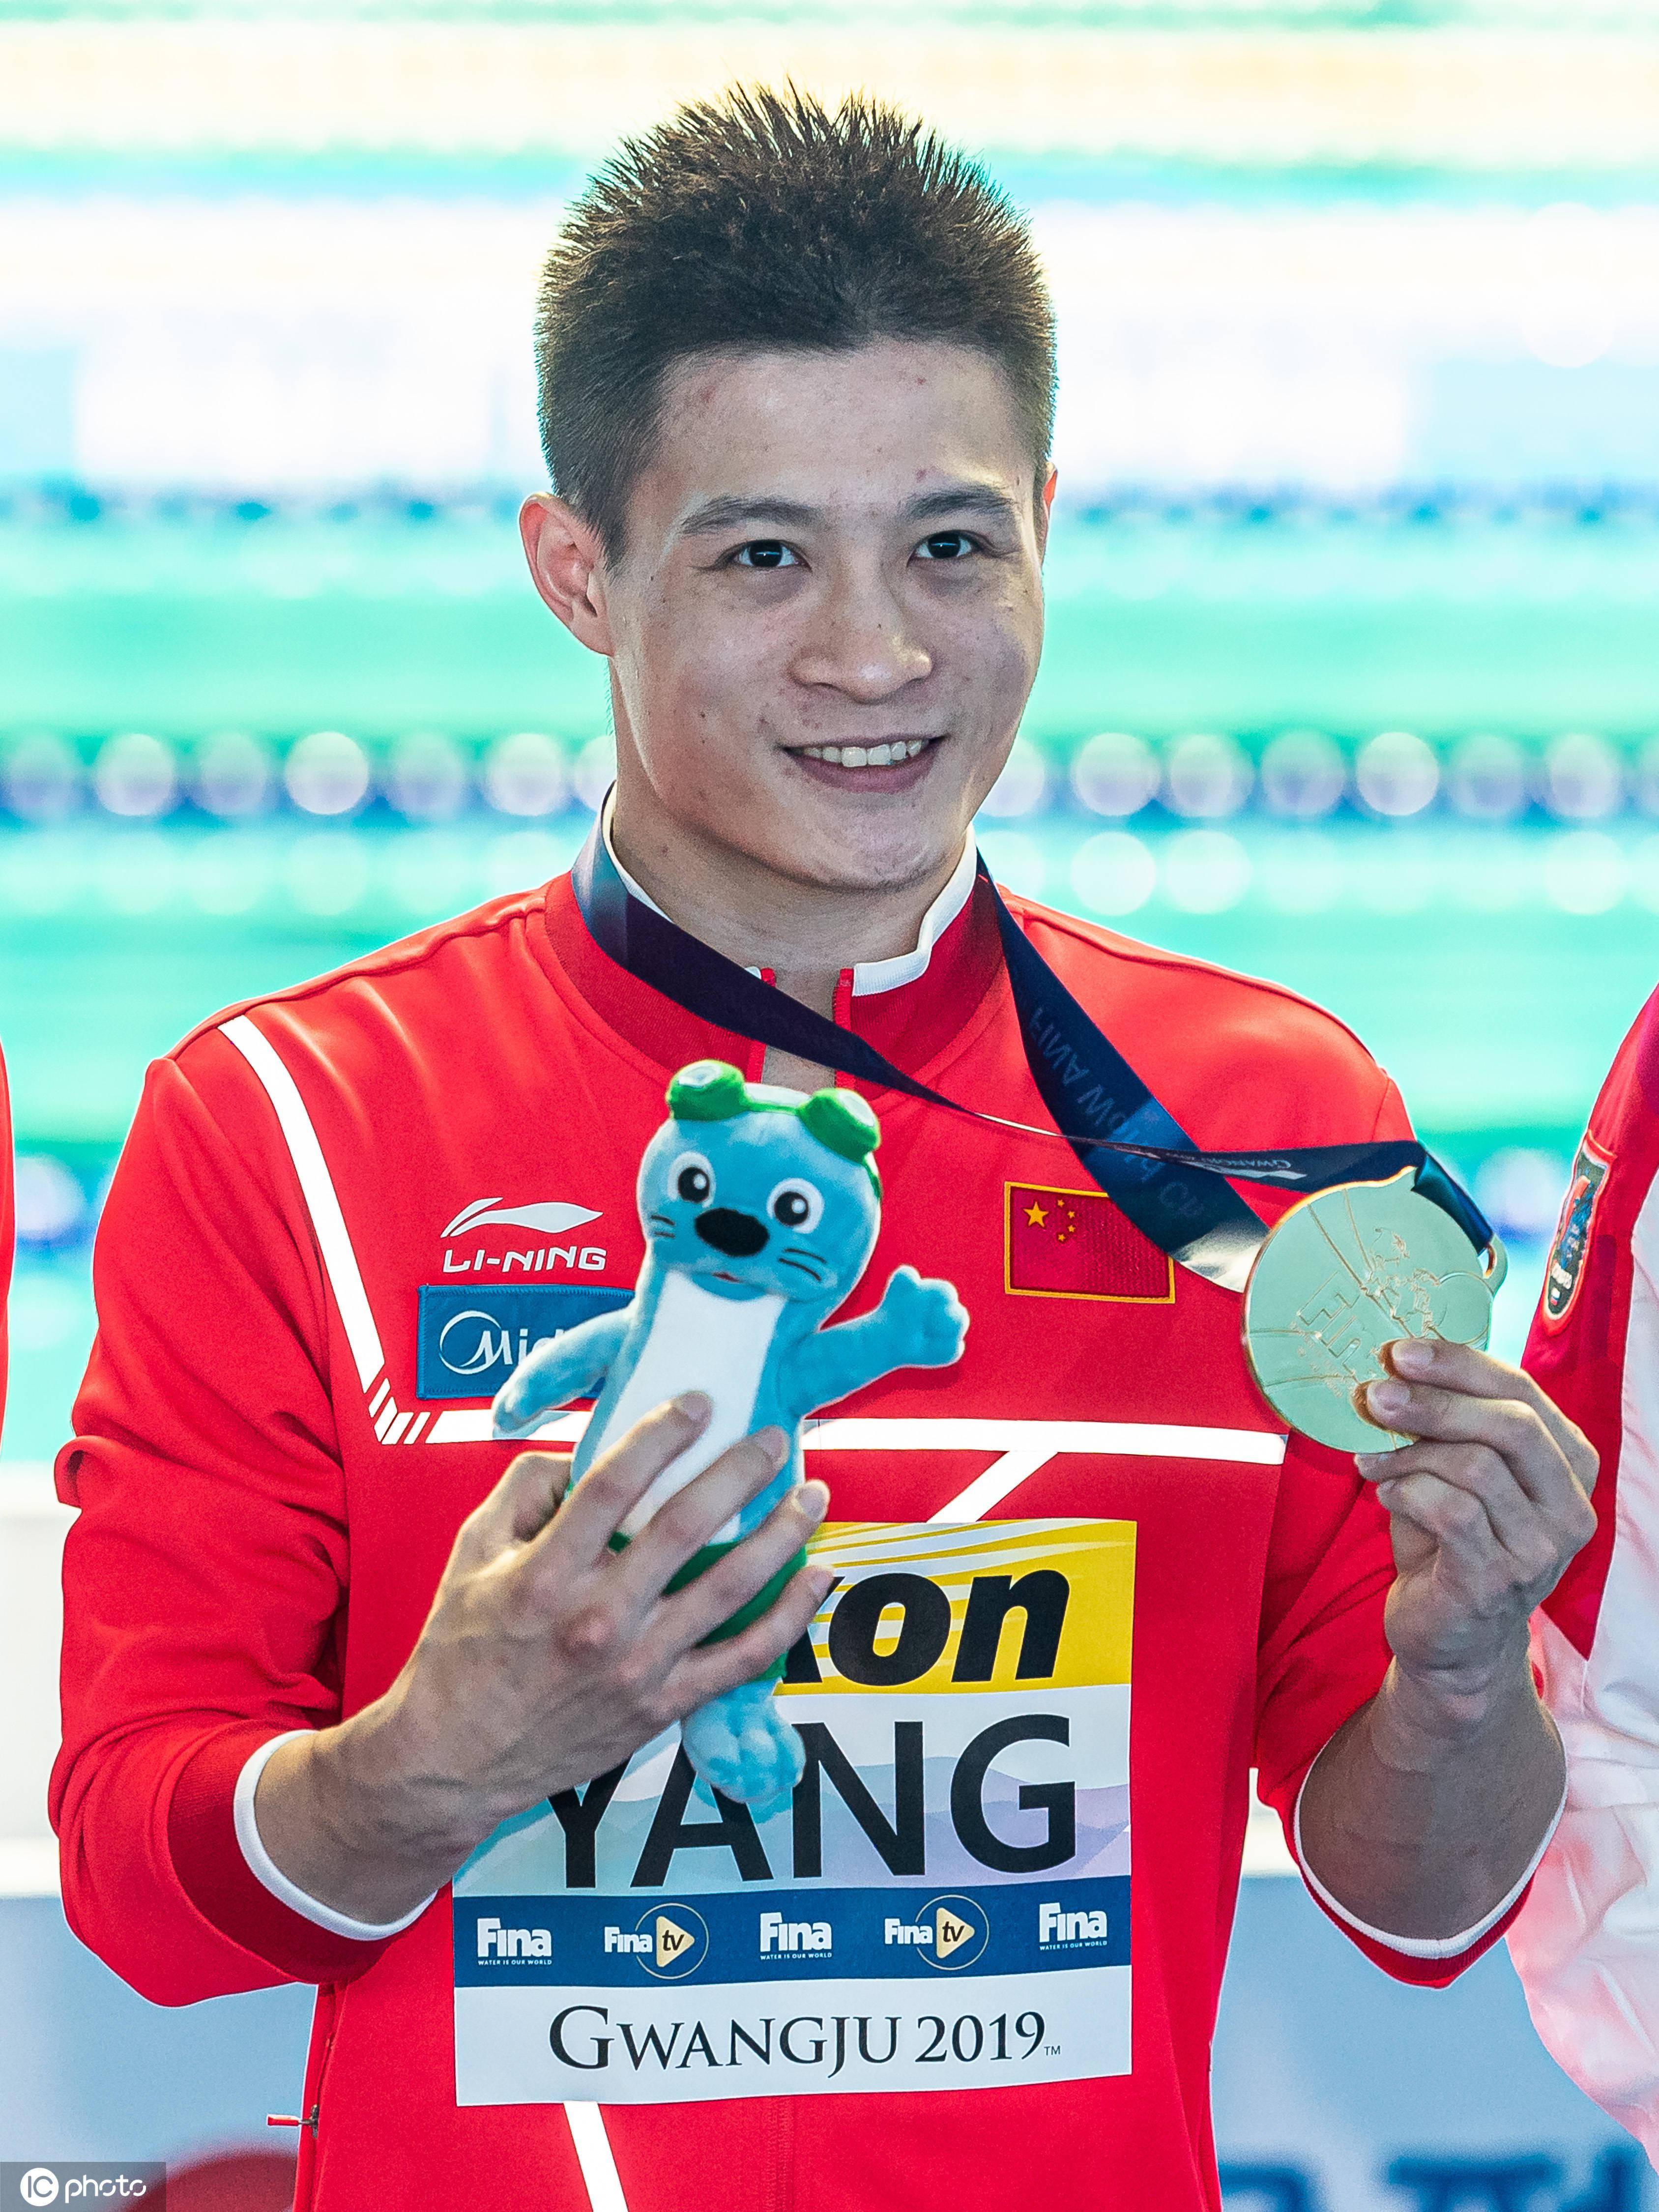 而夺得银牌的93年实力跳水健将杨健则出生于四川泸州,四岁时就开始